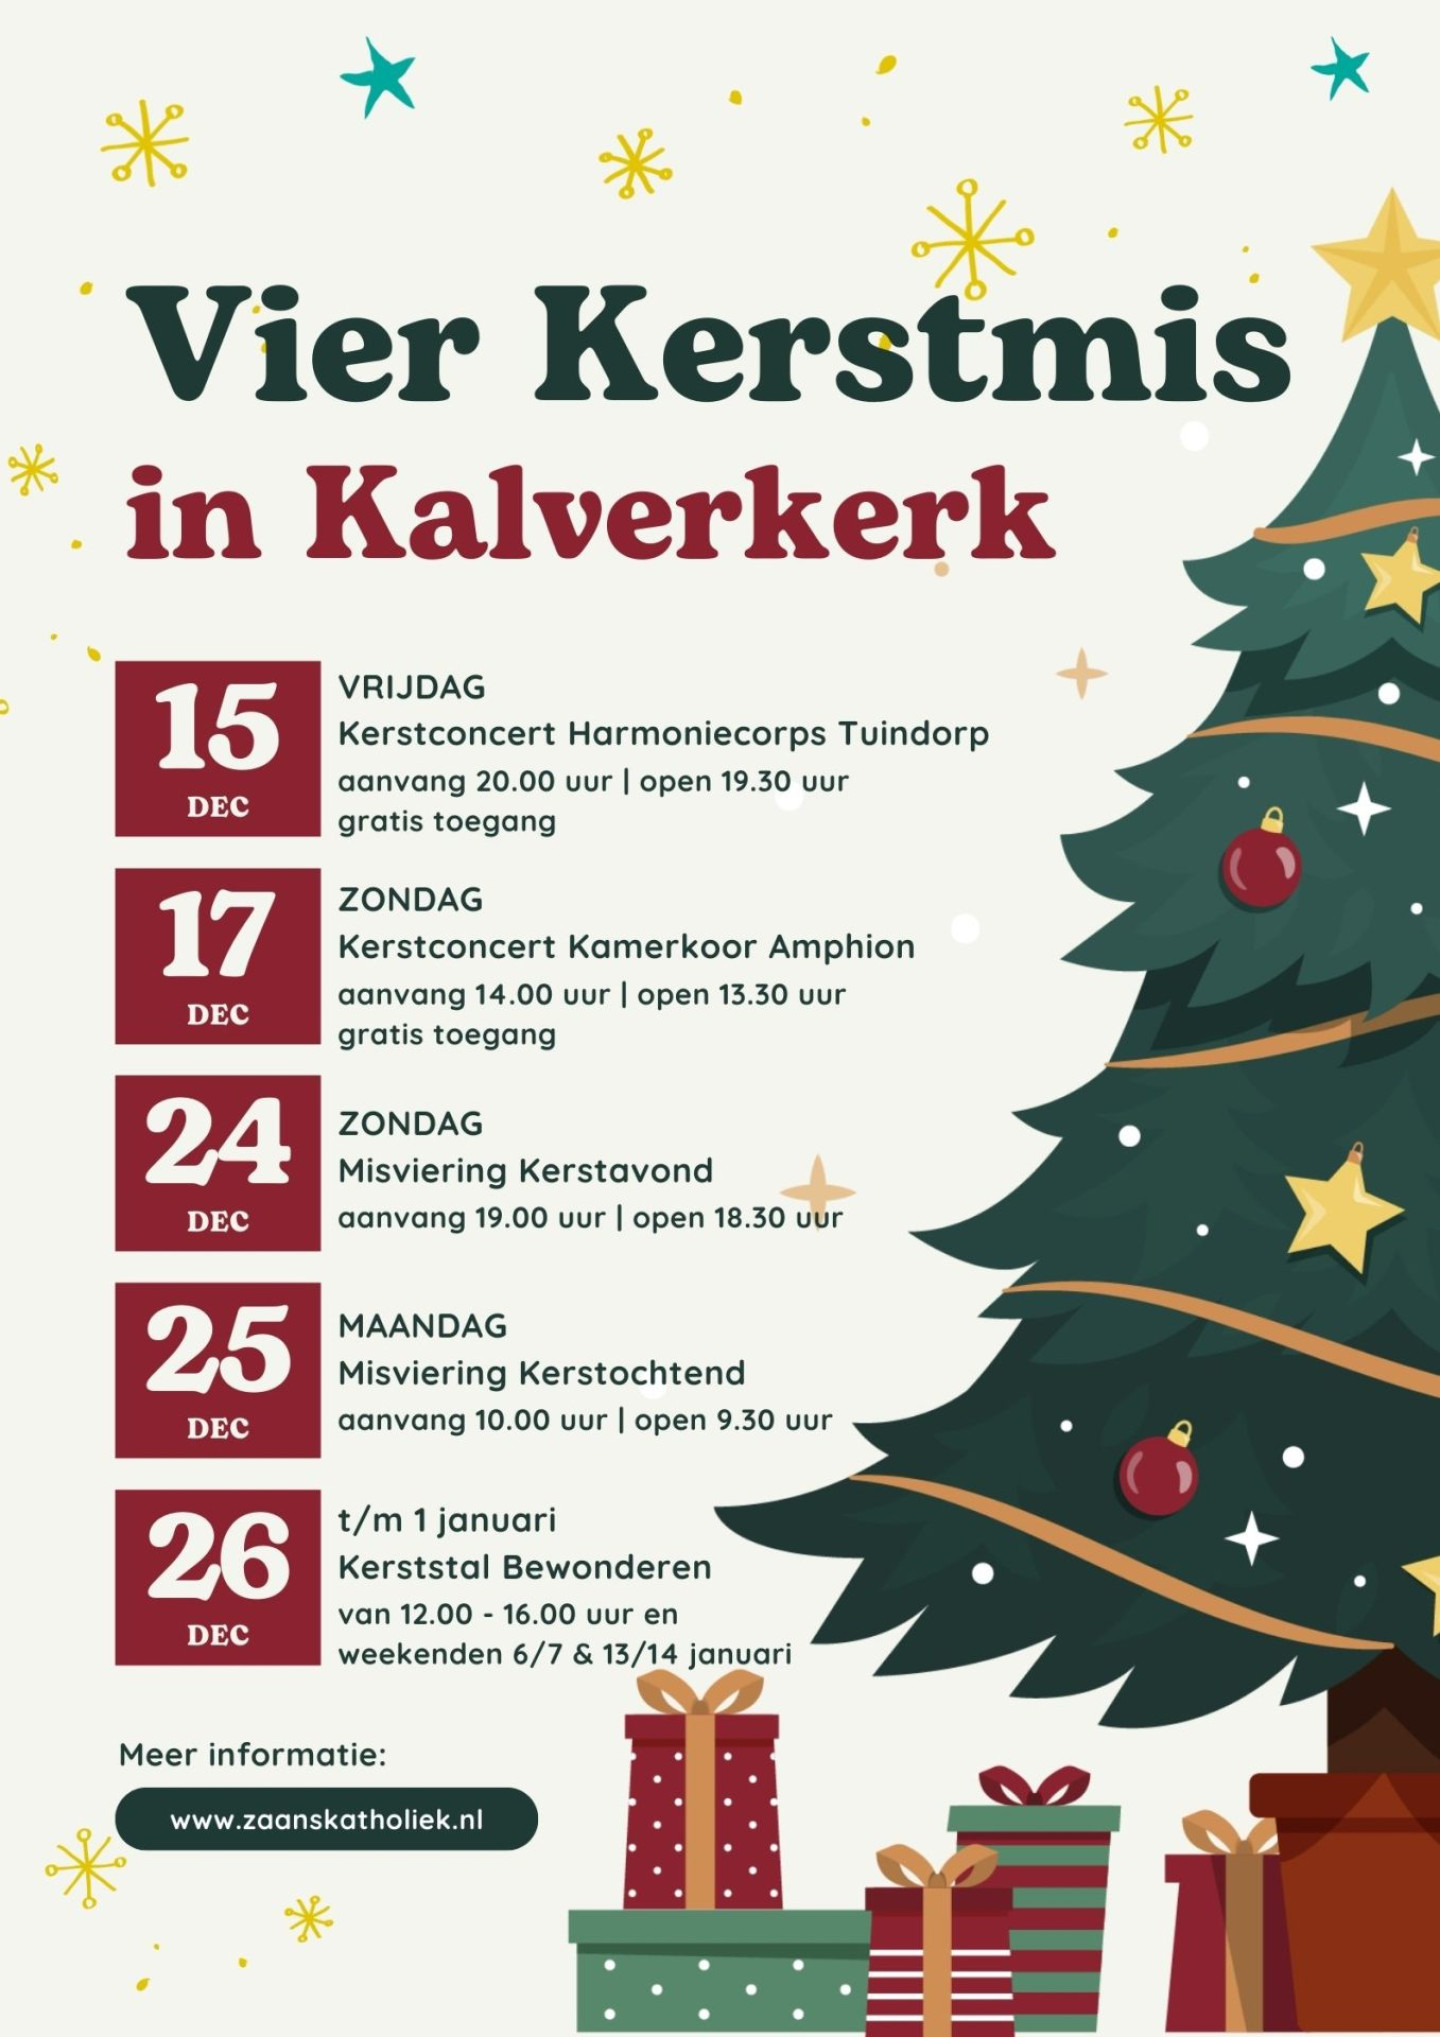 Kerstprogramma Kalverkerk